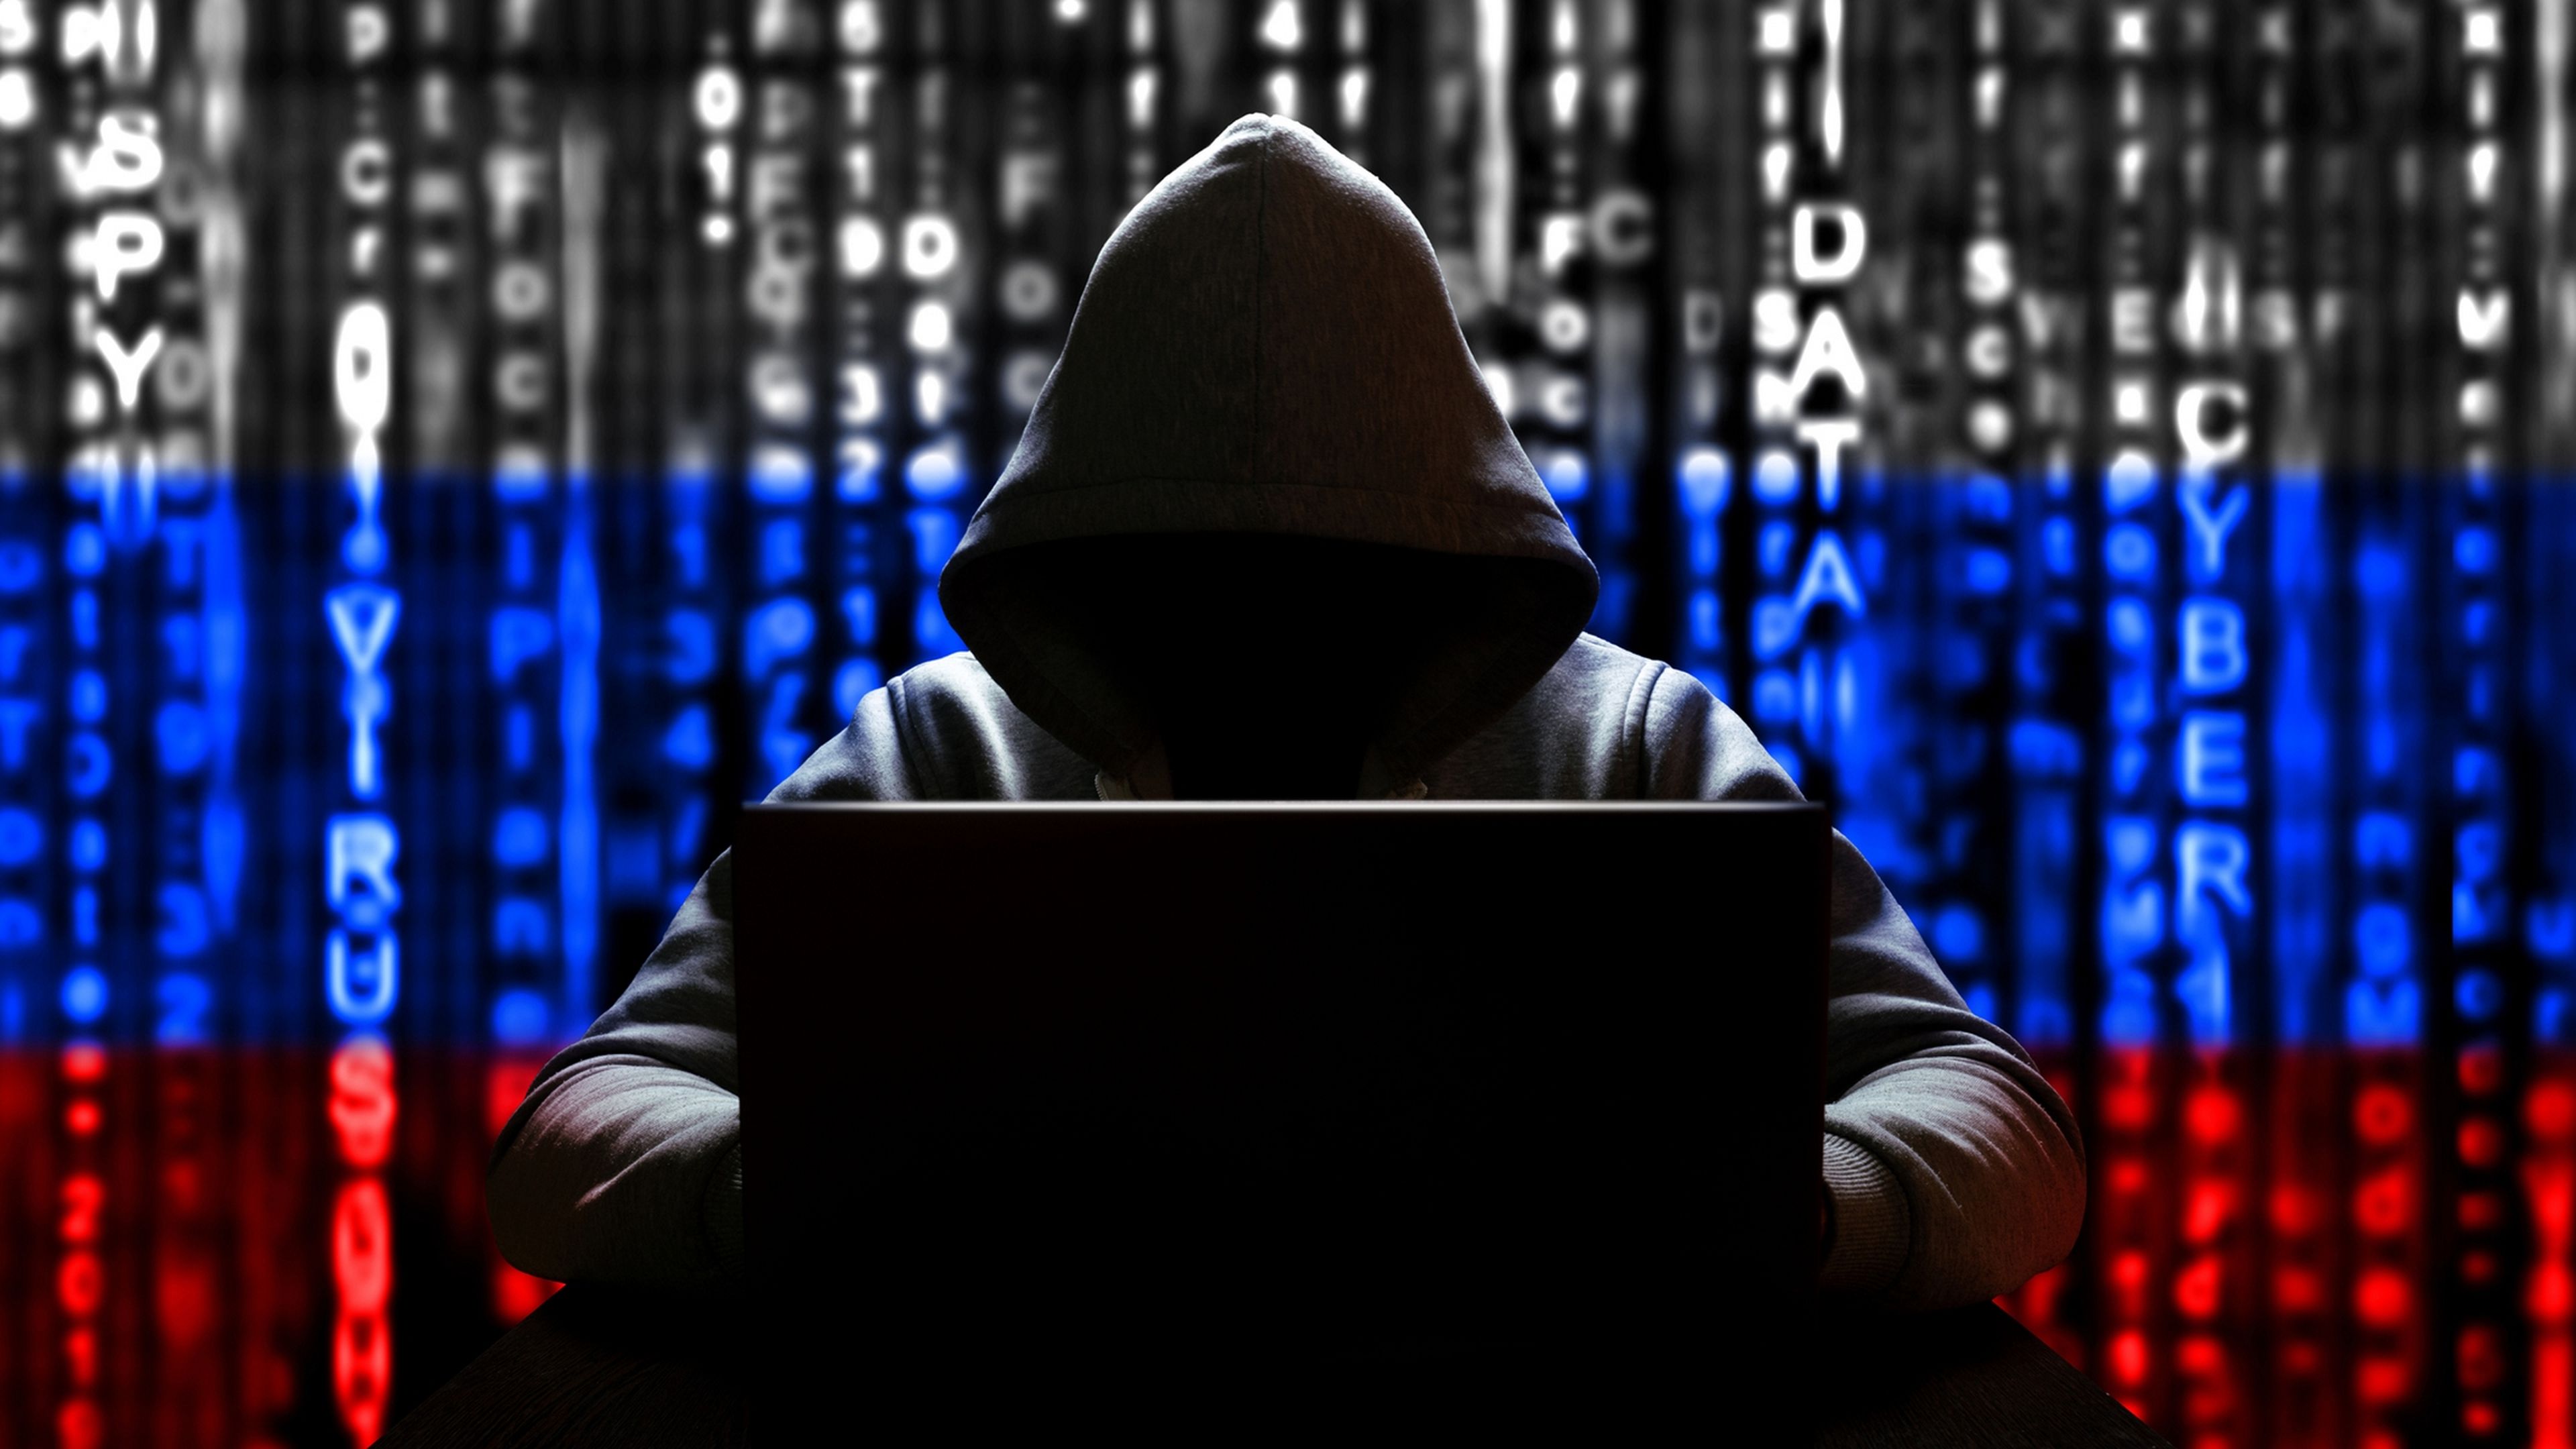 Microsoft confirma que hackers rusos han robado su código fuente, y están usándolo para atacarla